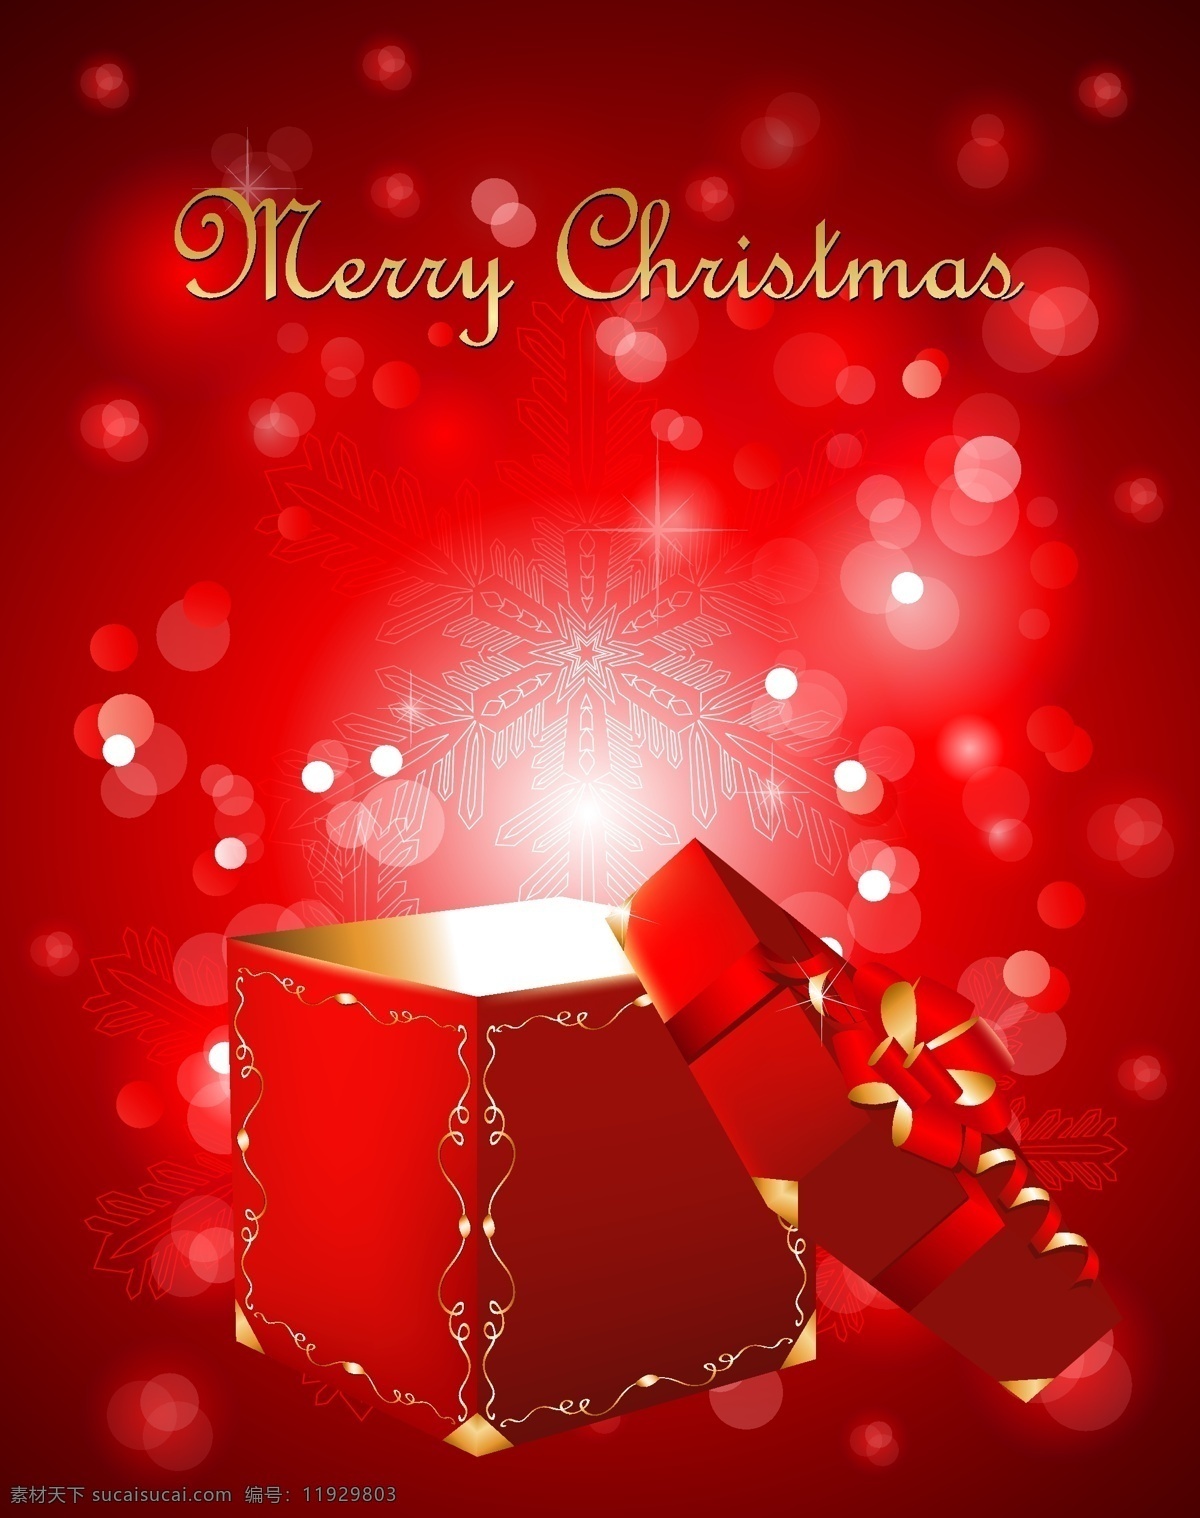 矢量 圣诞节 礼物 盒 背景 红色 欧式 边框 礼物盒 羽毛 海报